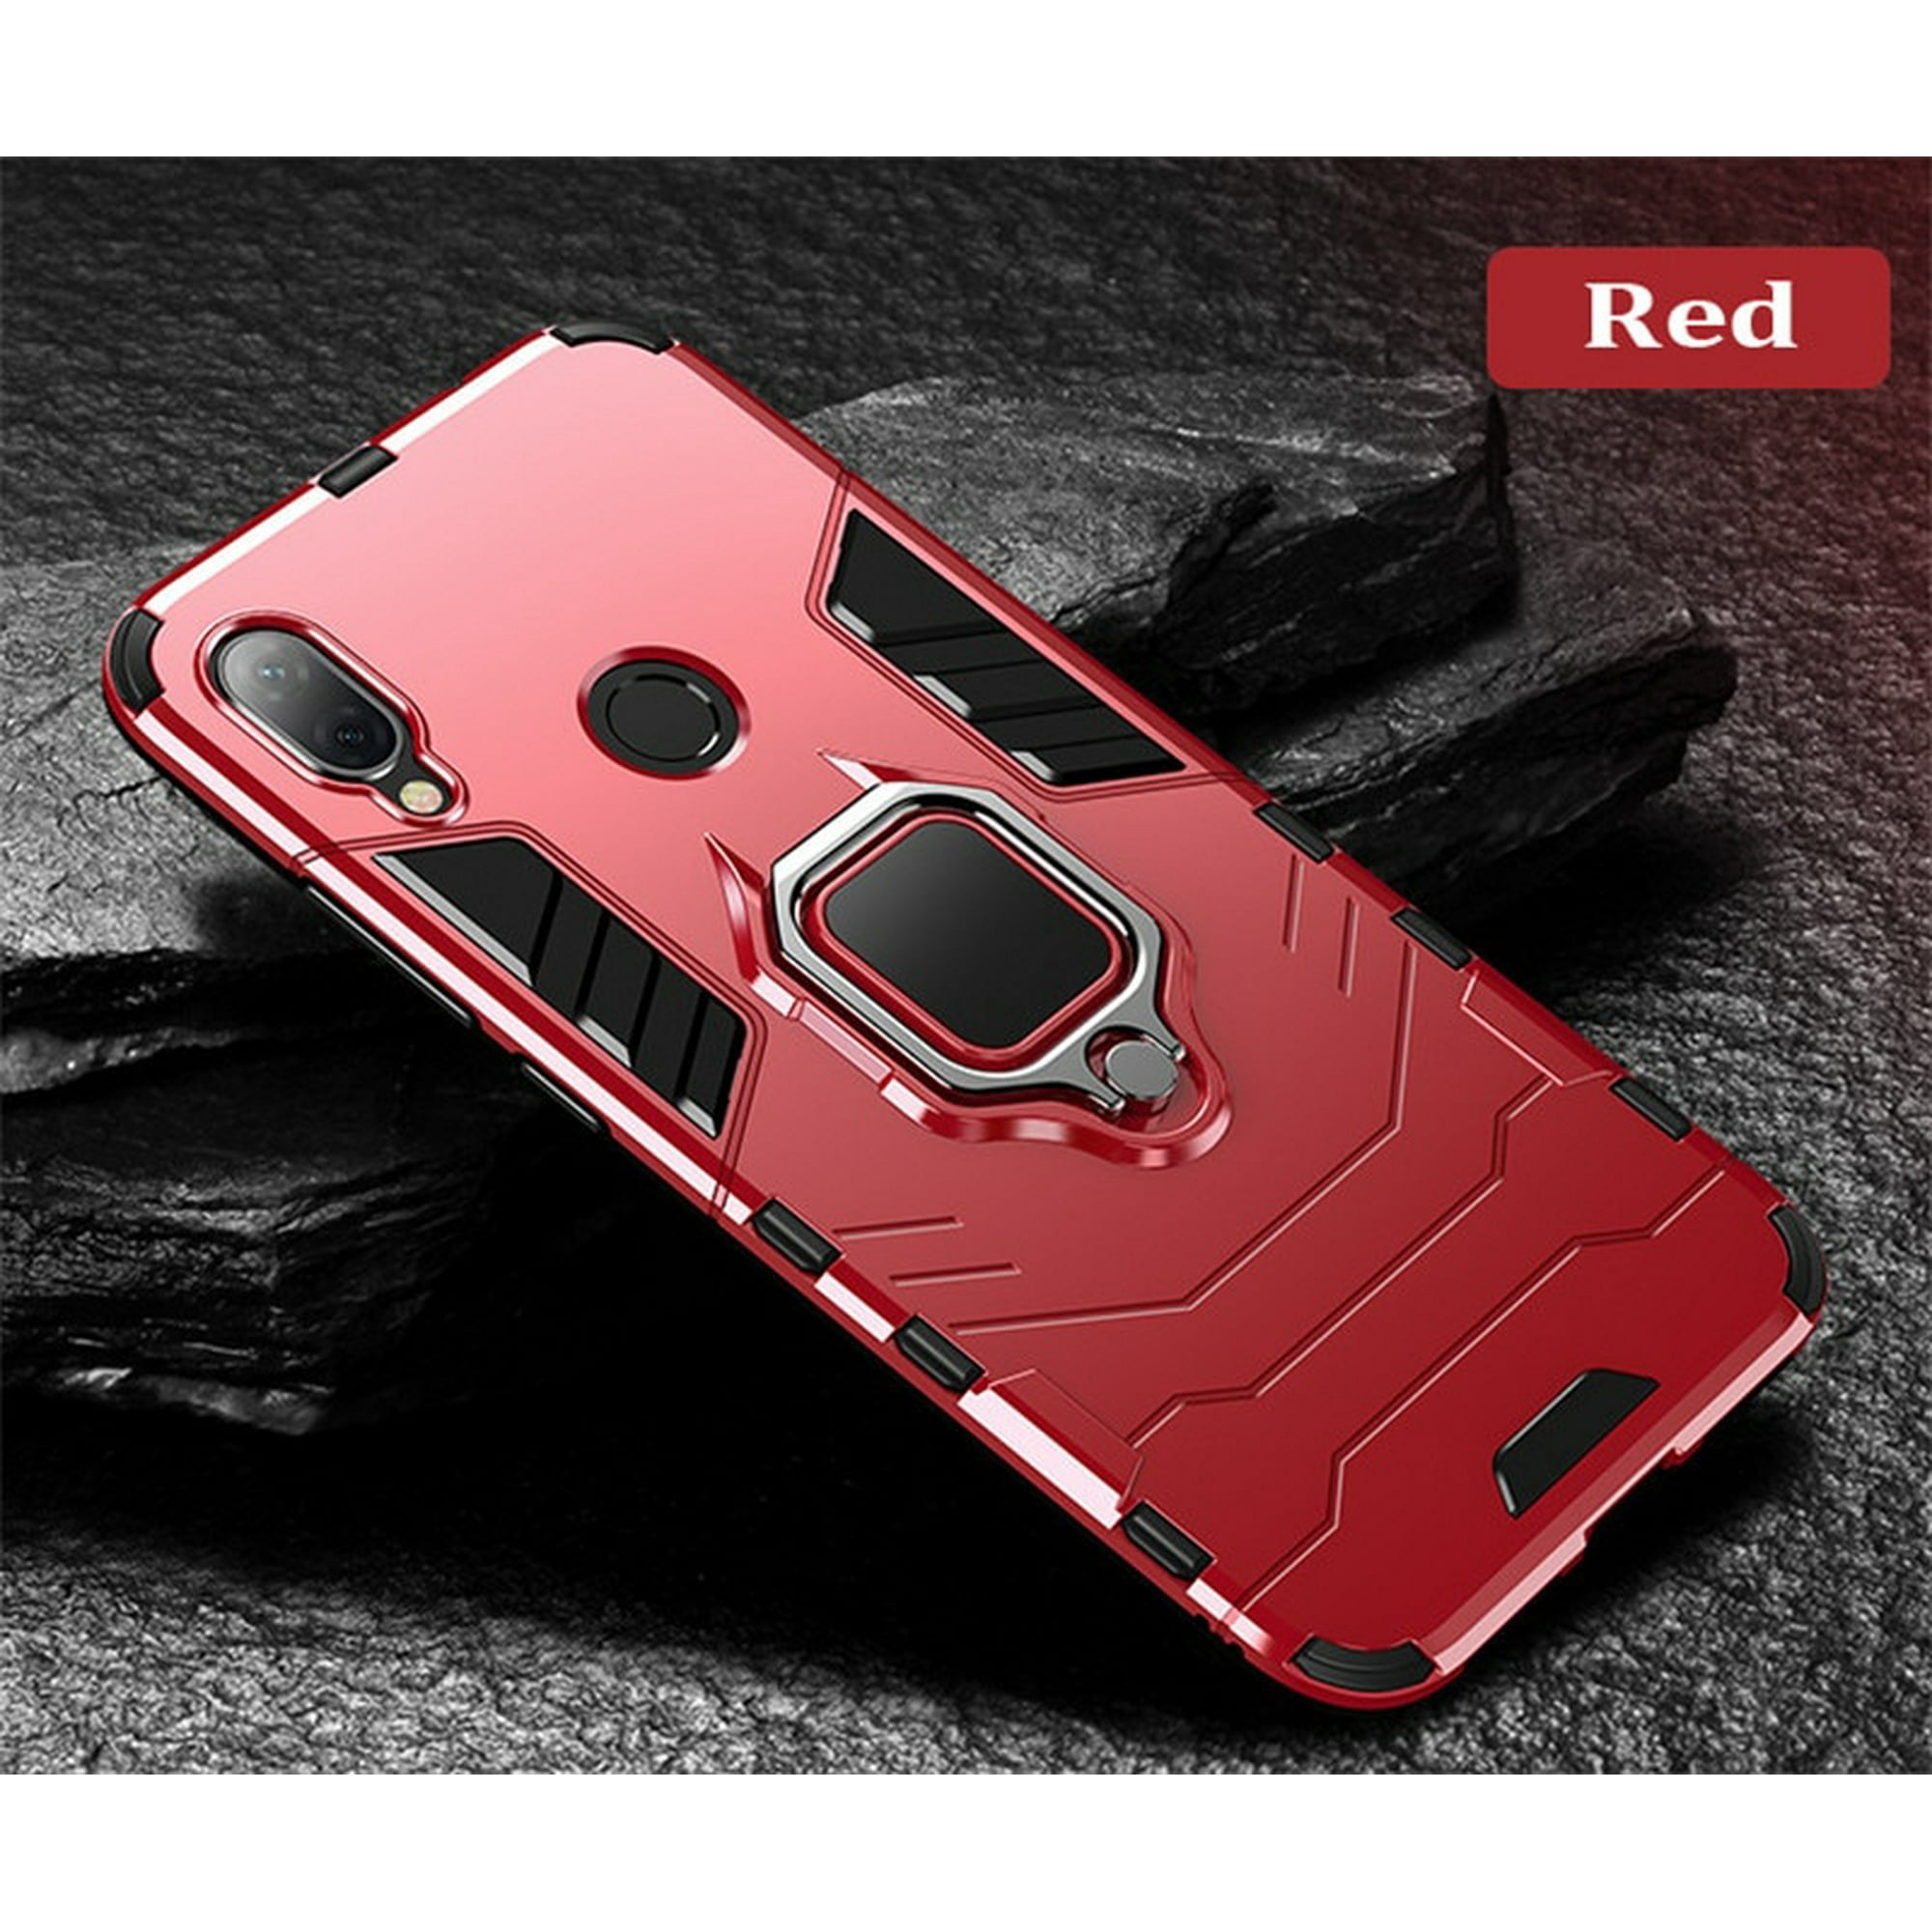  Fundas para teléfono celular Xiaomi Redmi Note 7, para Xiaomi Redmi  Note 7 Pro, funda para teléfono celular con funda magnética para anillo,  resistente a prueba de golpes (color rojo) 